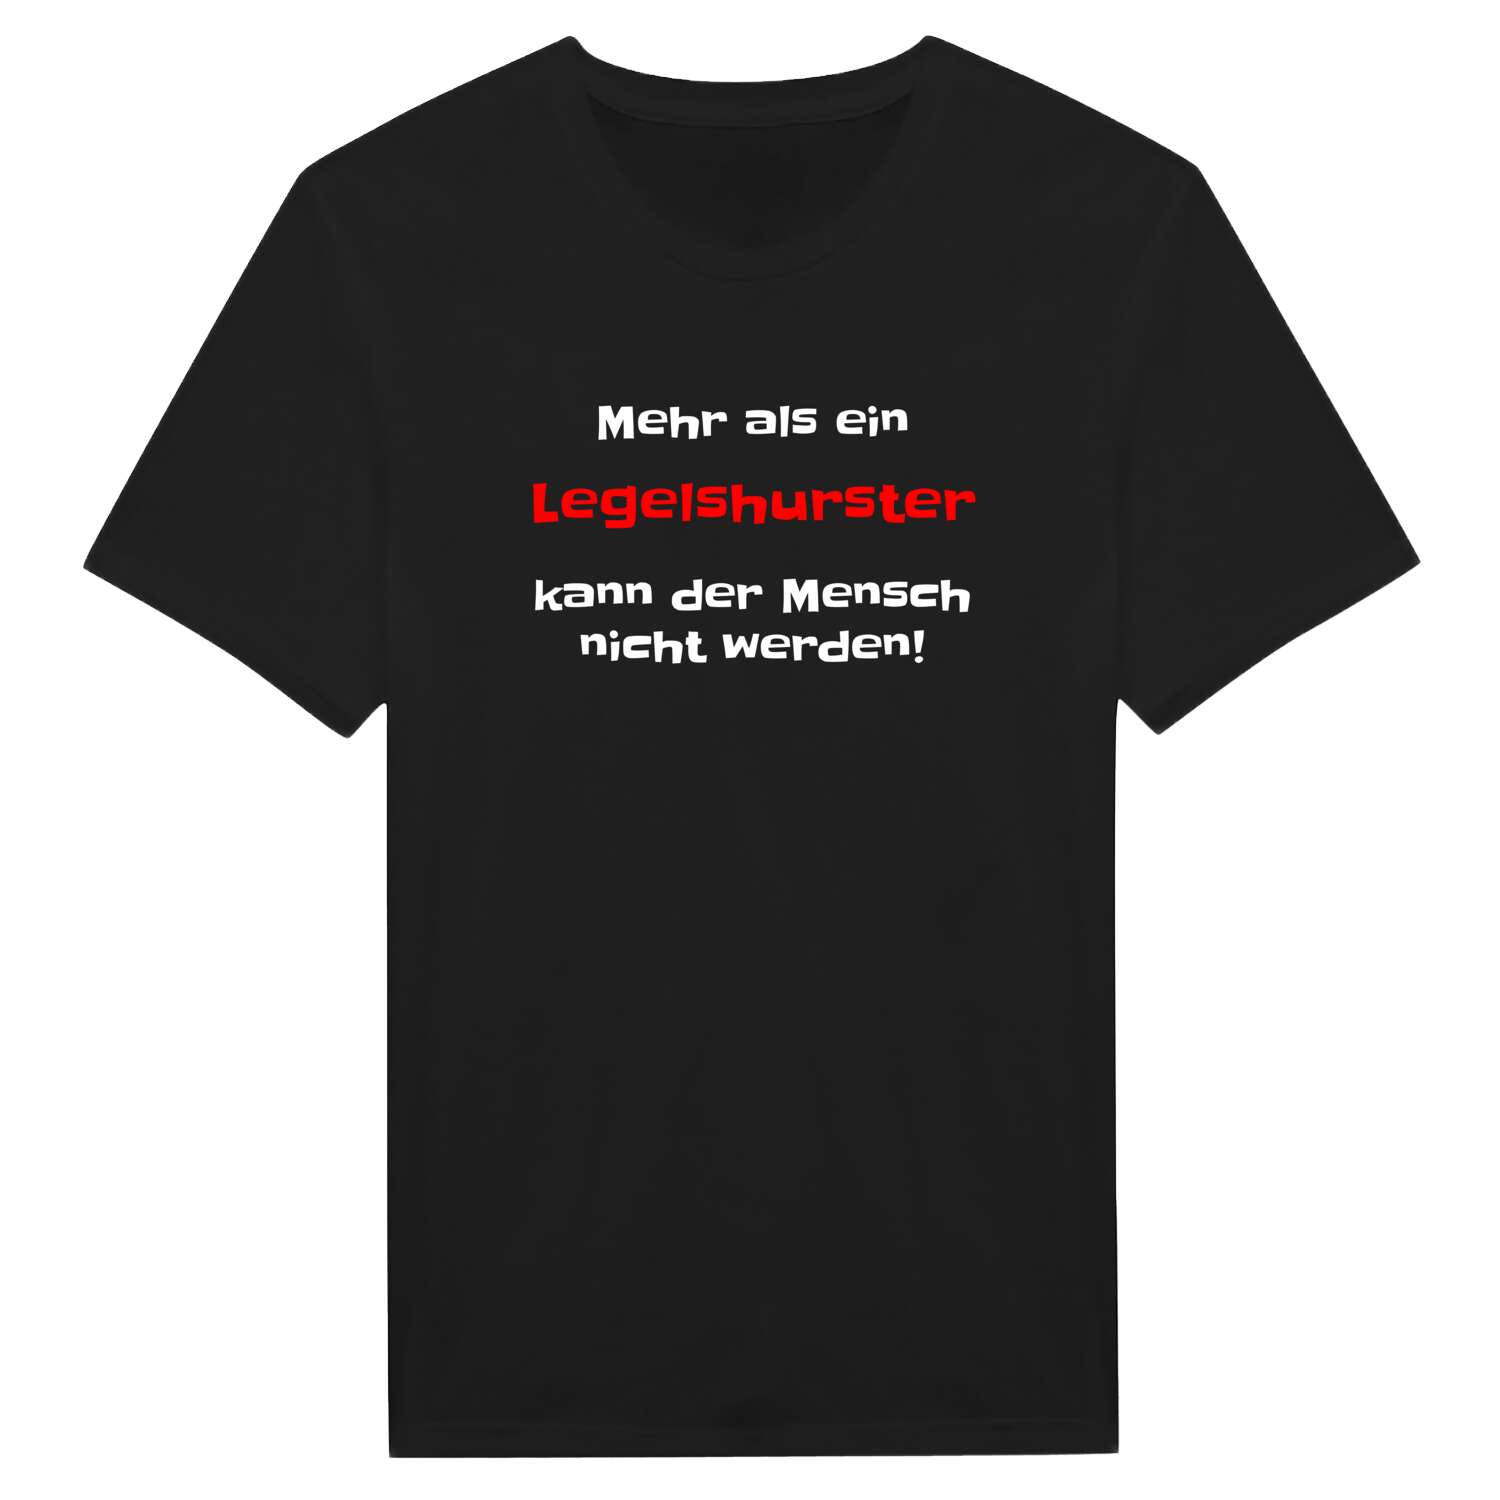 Legelshurst T-Shirt »Mehr als ein«